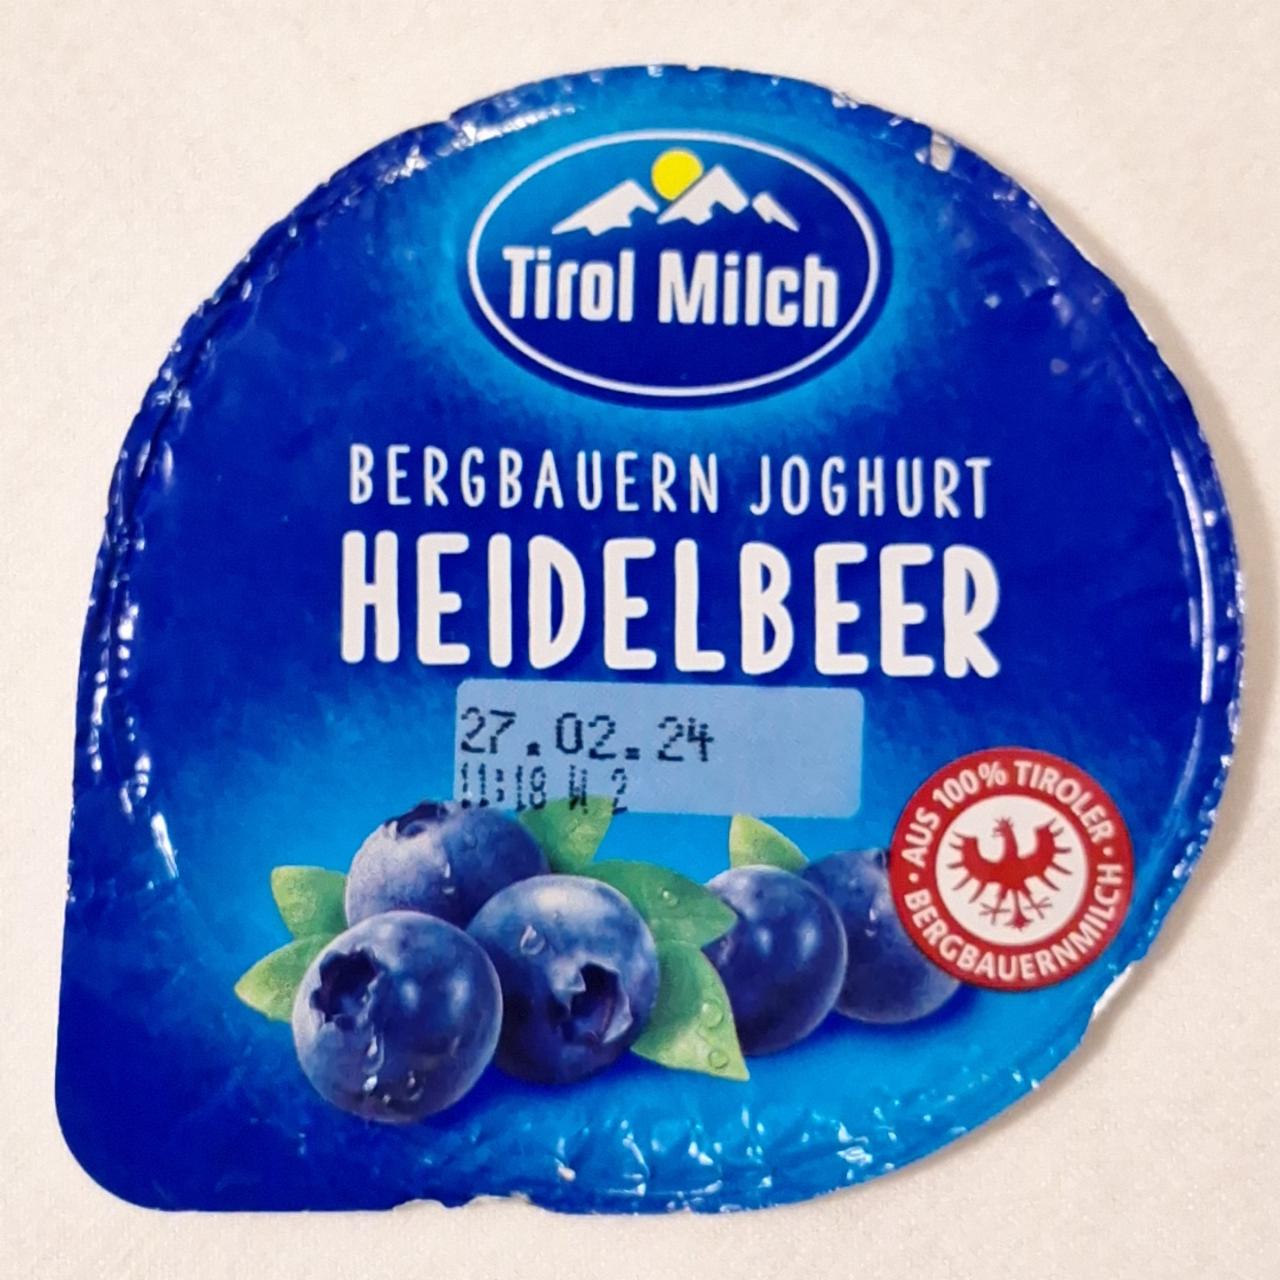 Fotografie - Bergbauern joghurt heidelbeer Tirol Milch